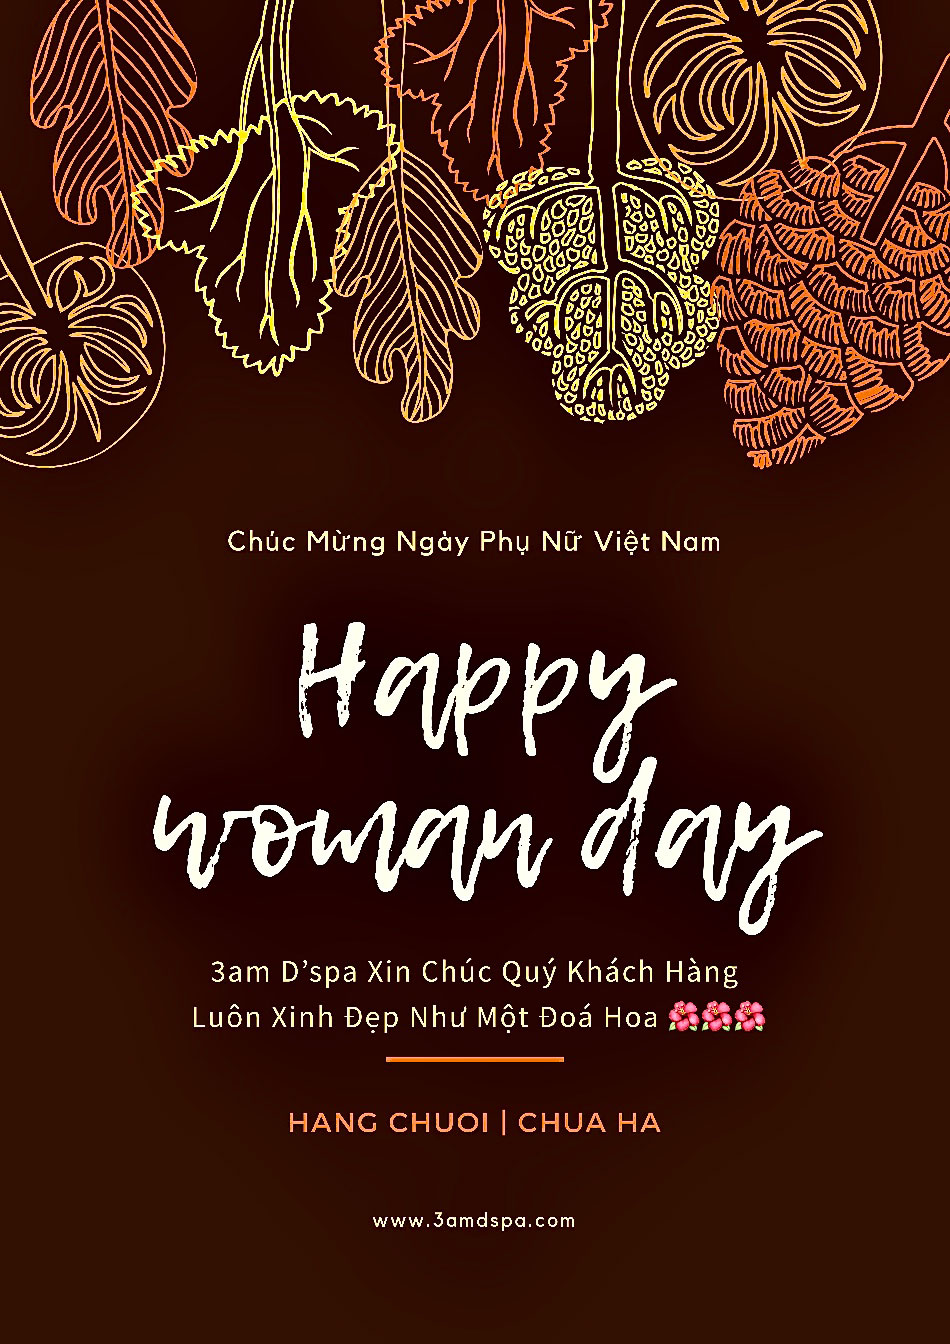 3am D’spa xin gửi những lời chúc tốt đẹp nhất đến quý khách hàng - Chúc mừng ngày Phụ Nữ Việt Nam